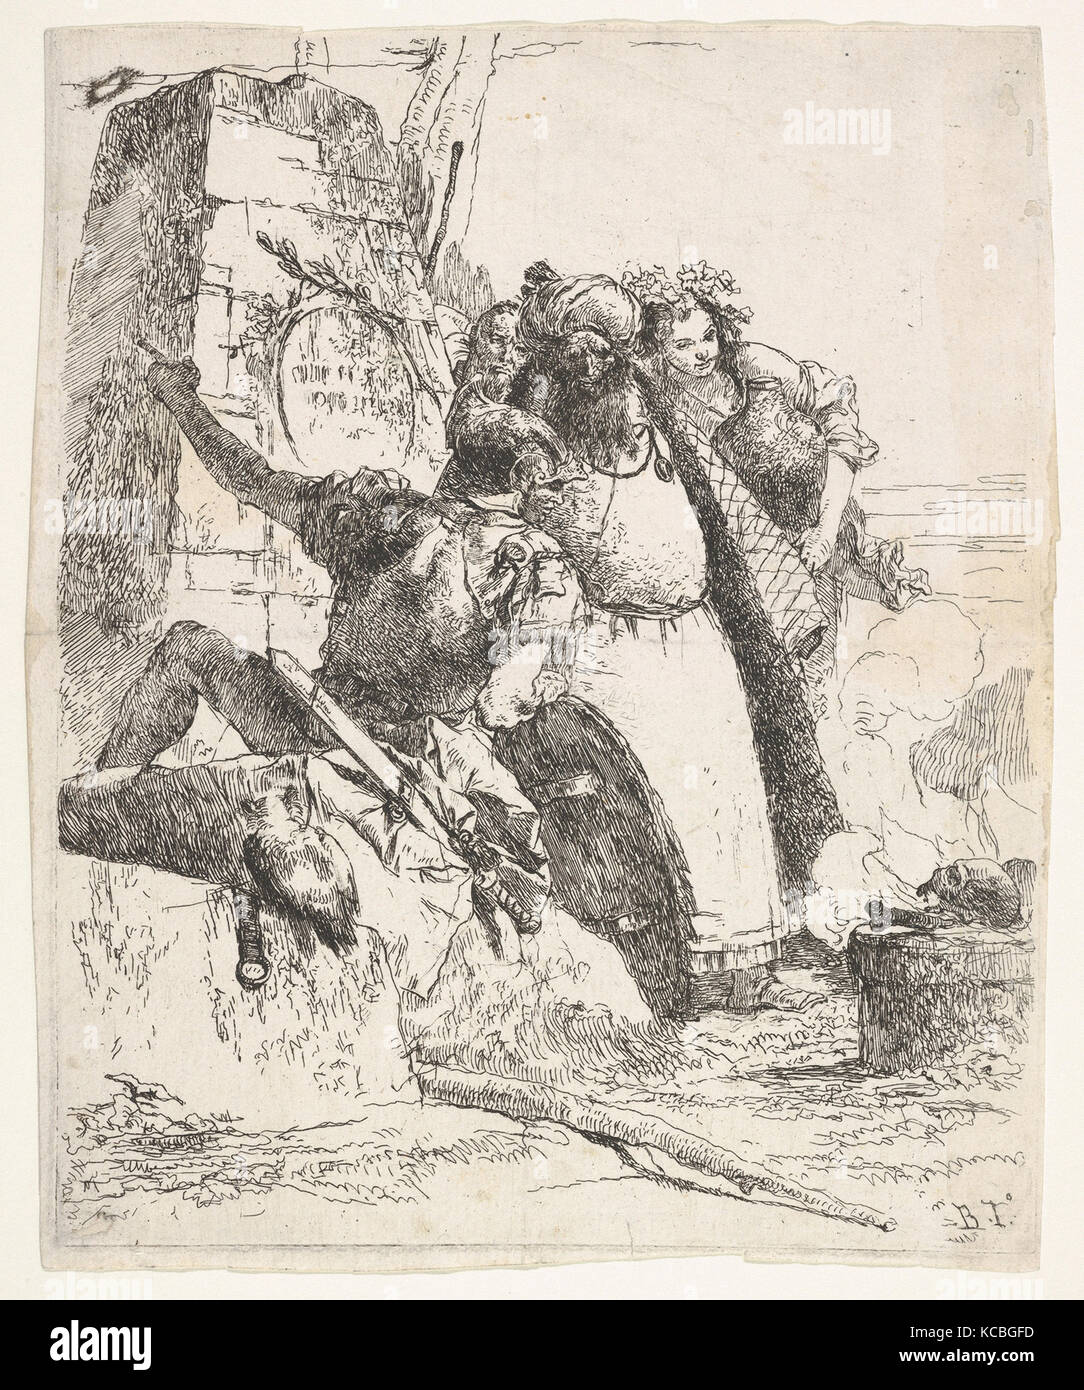 Eine Szene von nekromantie: eine Frau, die mit einem Schiff, einem turbaned Mann, und ein Soldat auf einem Sockel Stockfoto